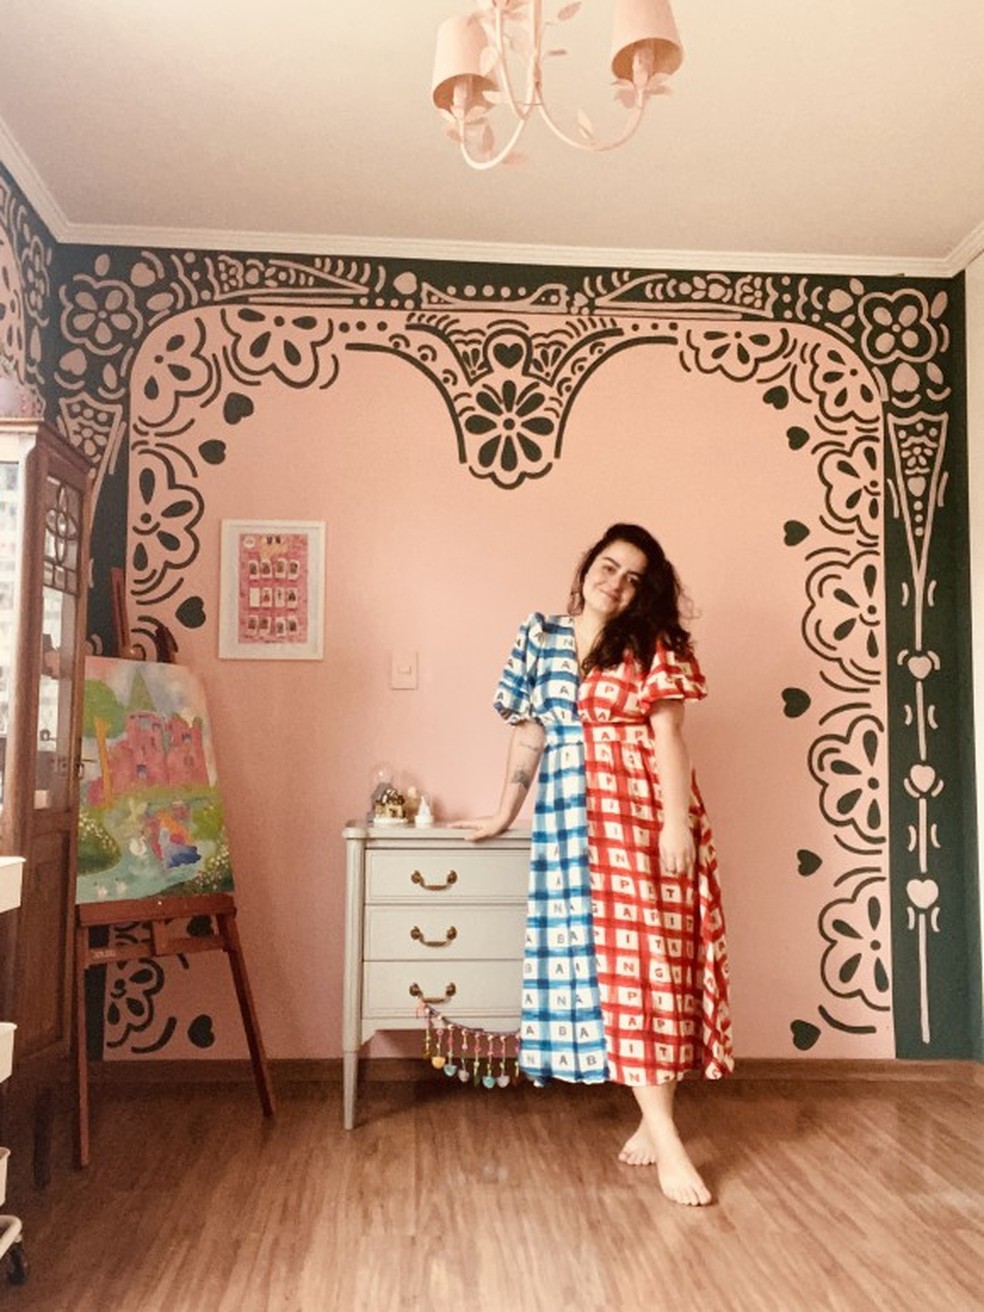 Heloisa montou um cômodo de "sonho" em sua casa — Foto: Arquivo pessoal